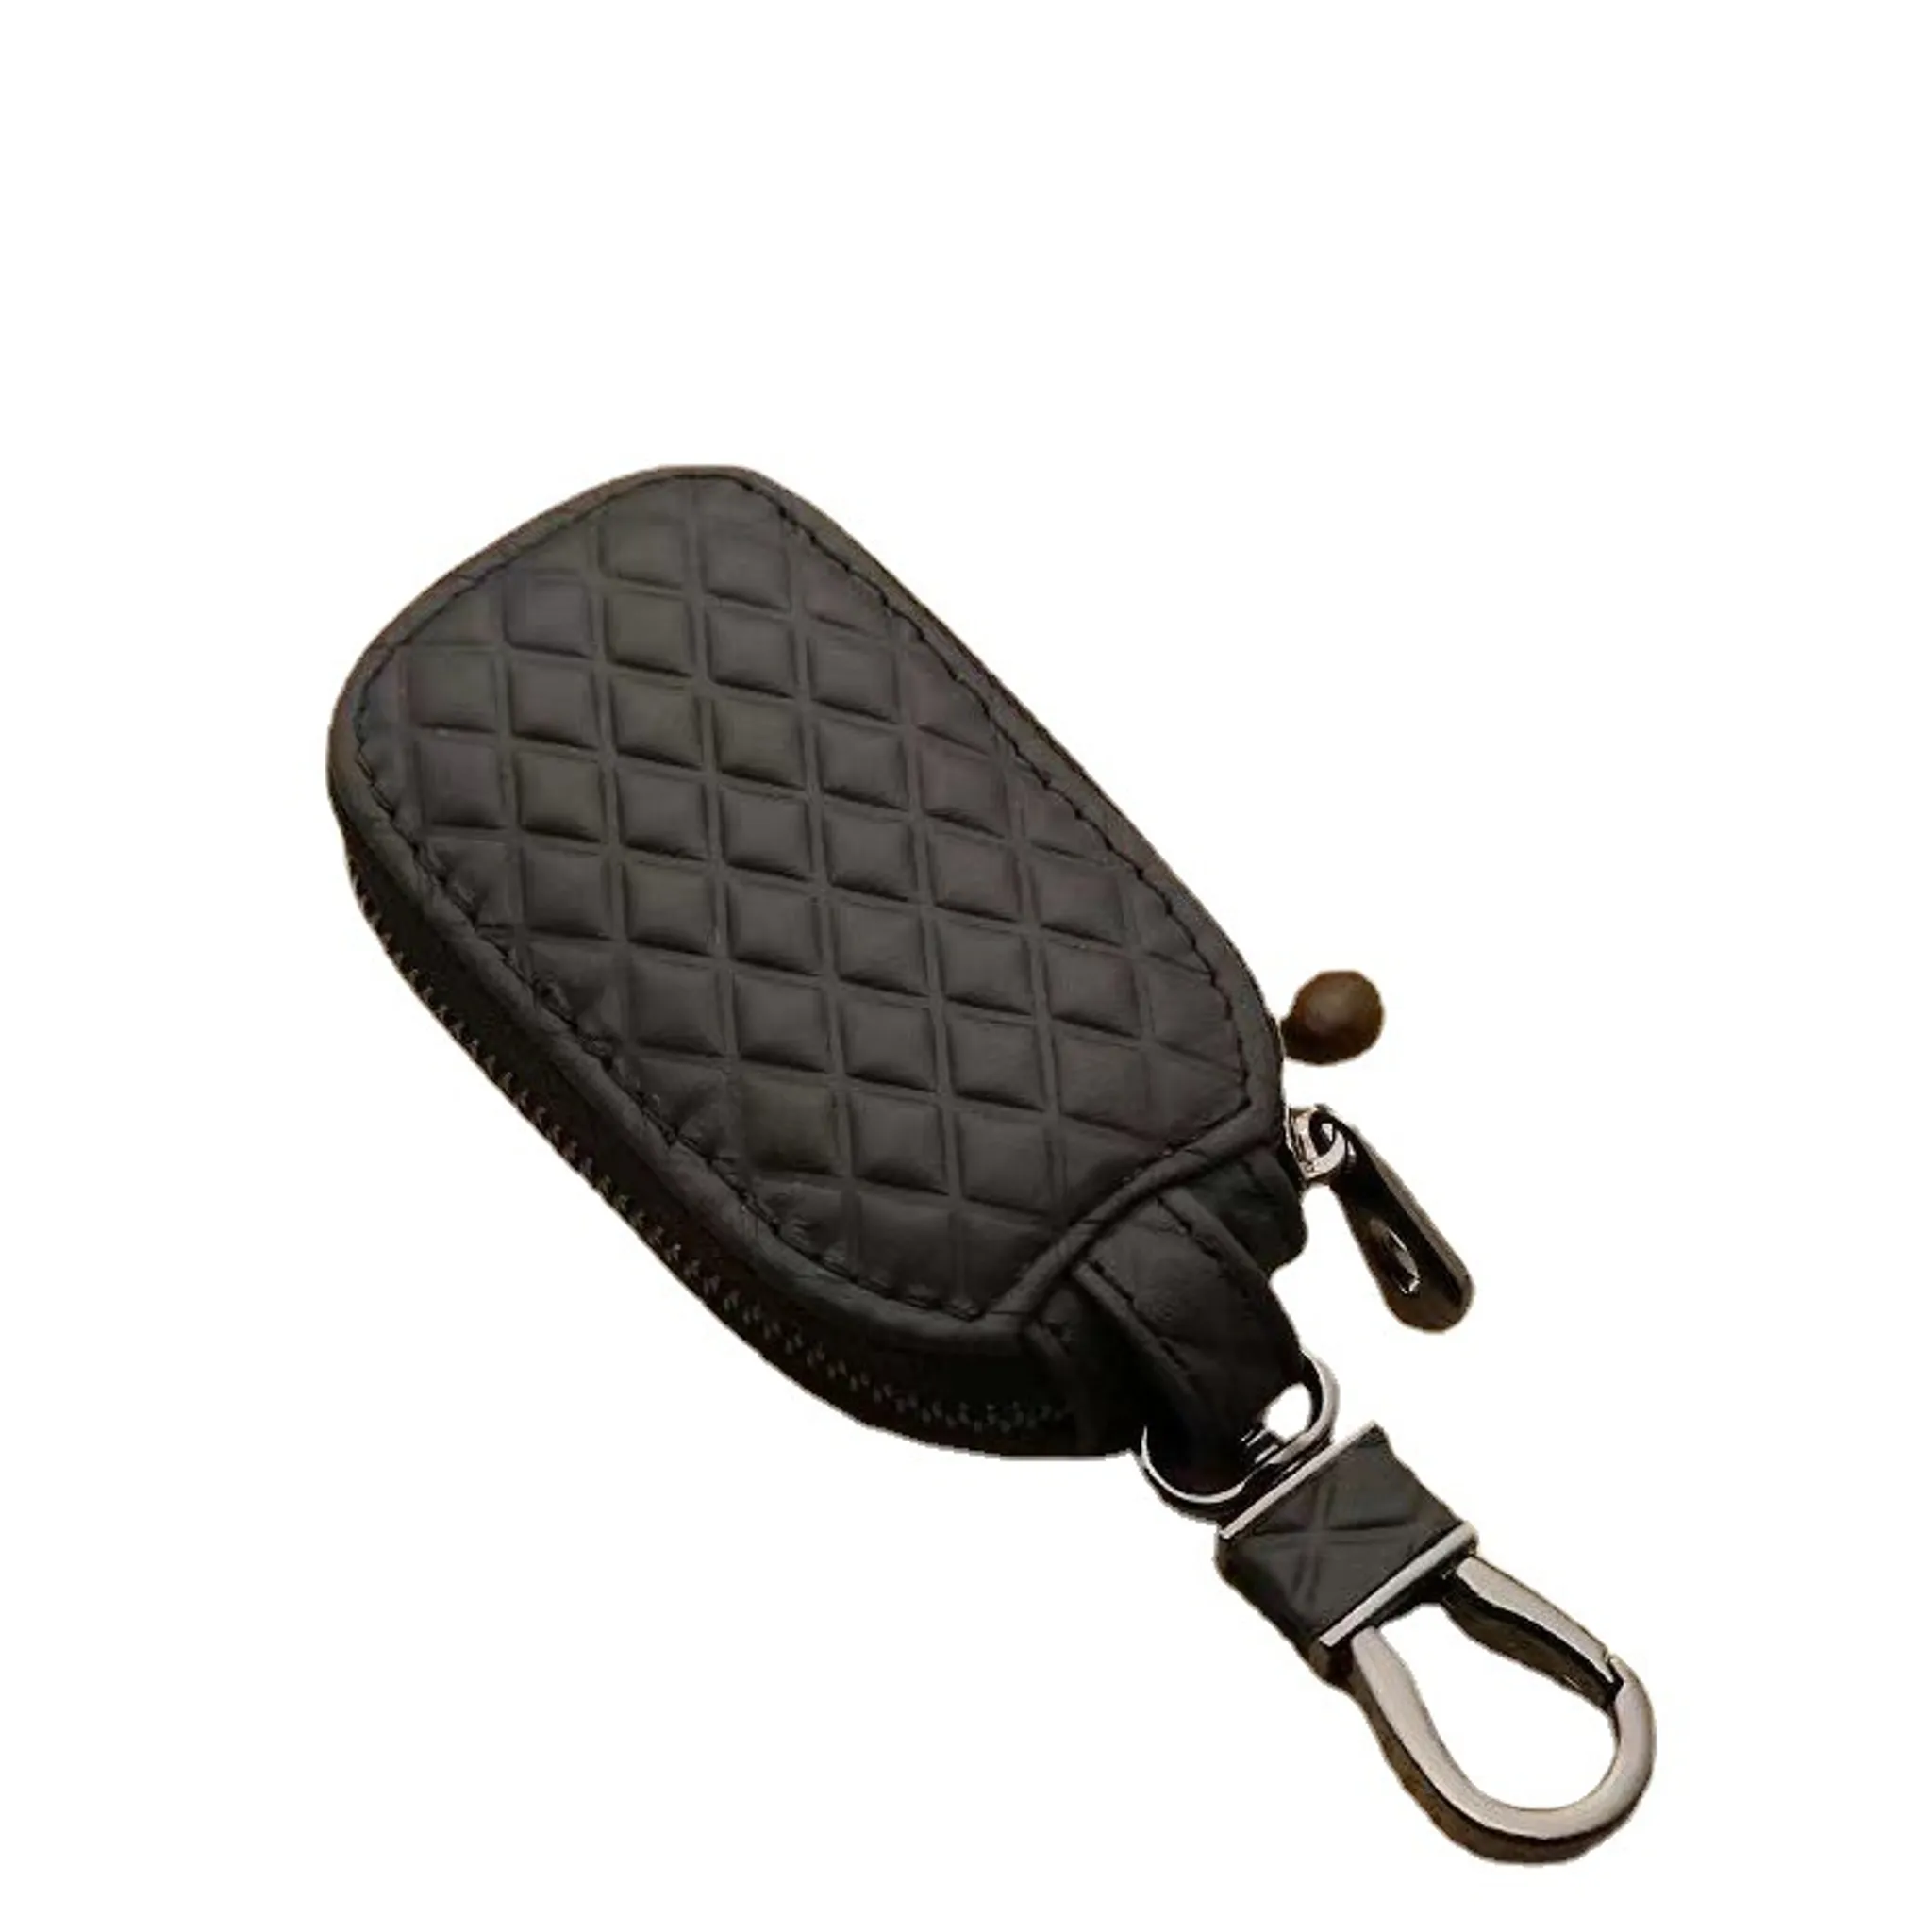 Tragbare Vintage Leder Schlüssel Tasche Auto Schlüssel Halter